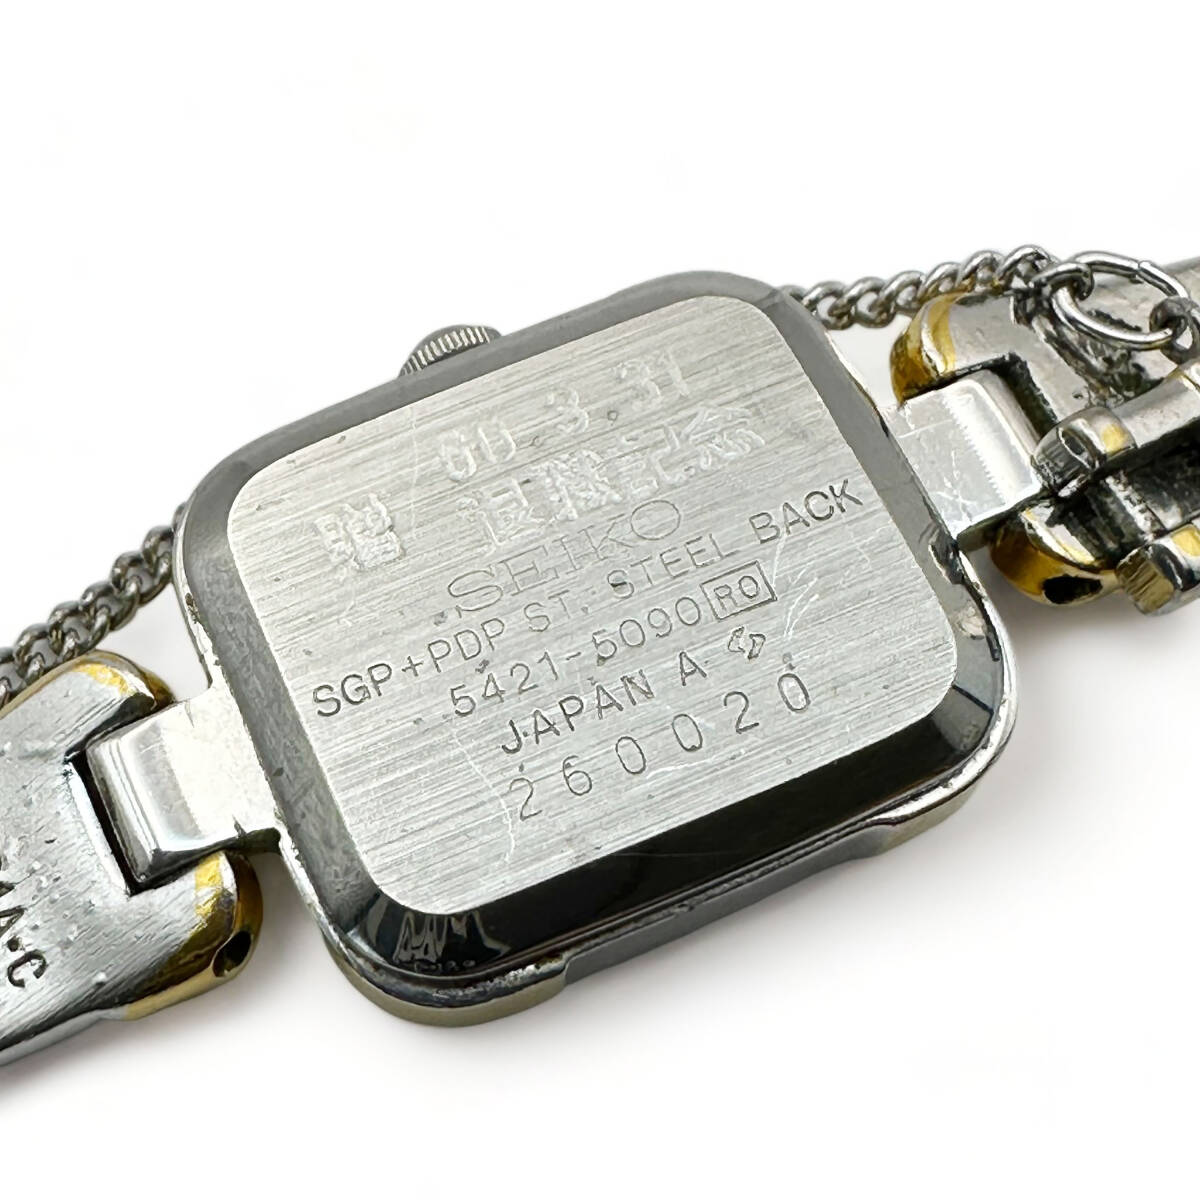 T515 ヴィンテージ SEIKO セイコー クオーツ ブレスレット 腕時計 5421-5090 ブラウン系文字盤 レディース _画像4